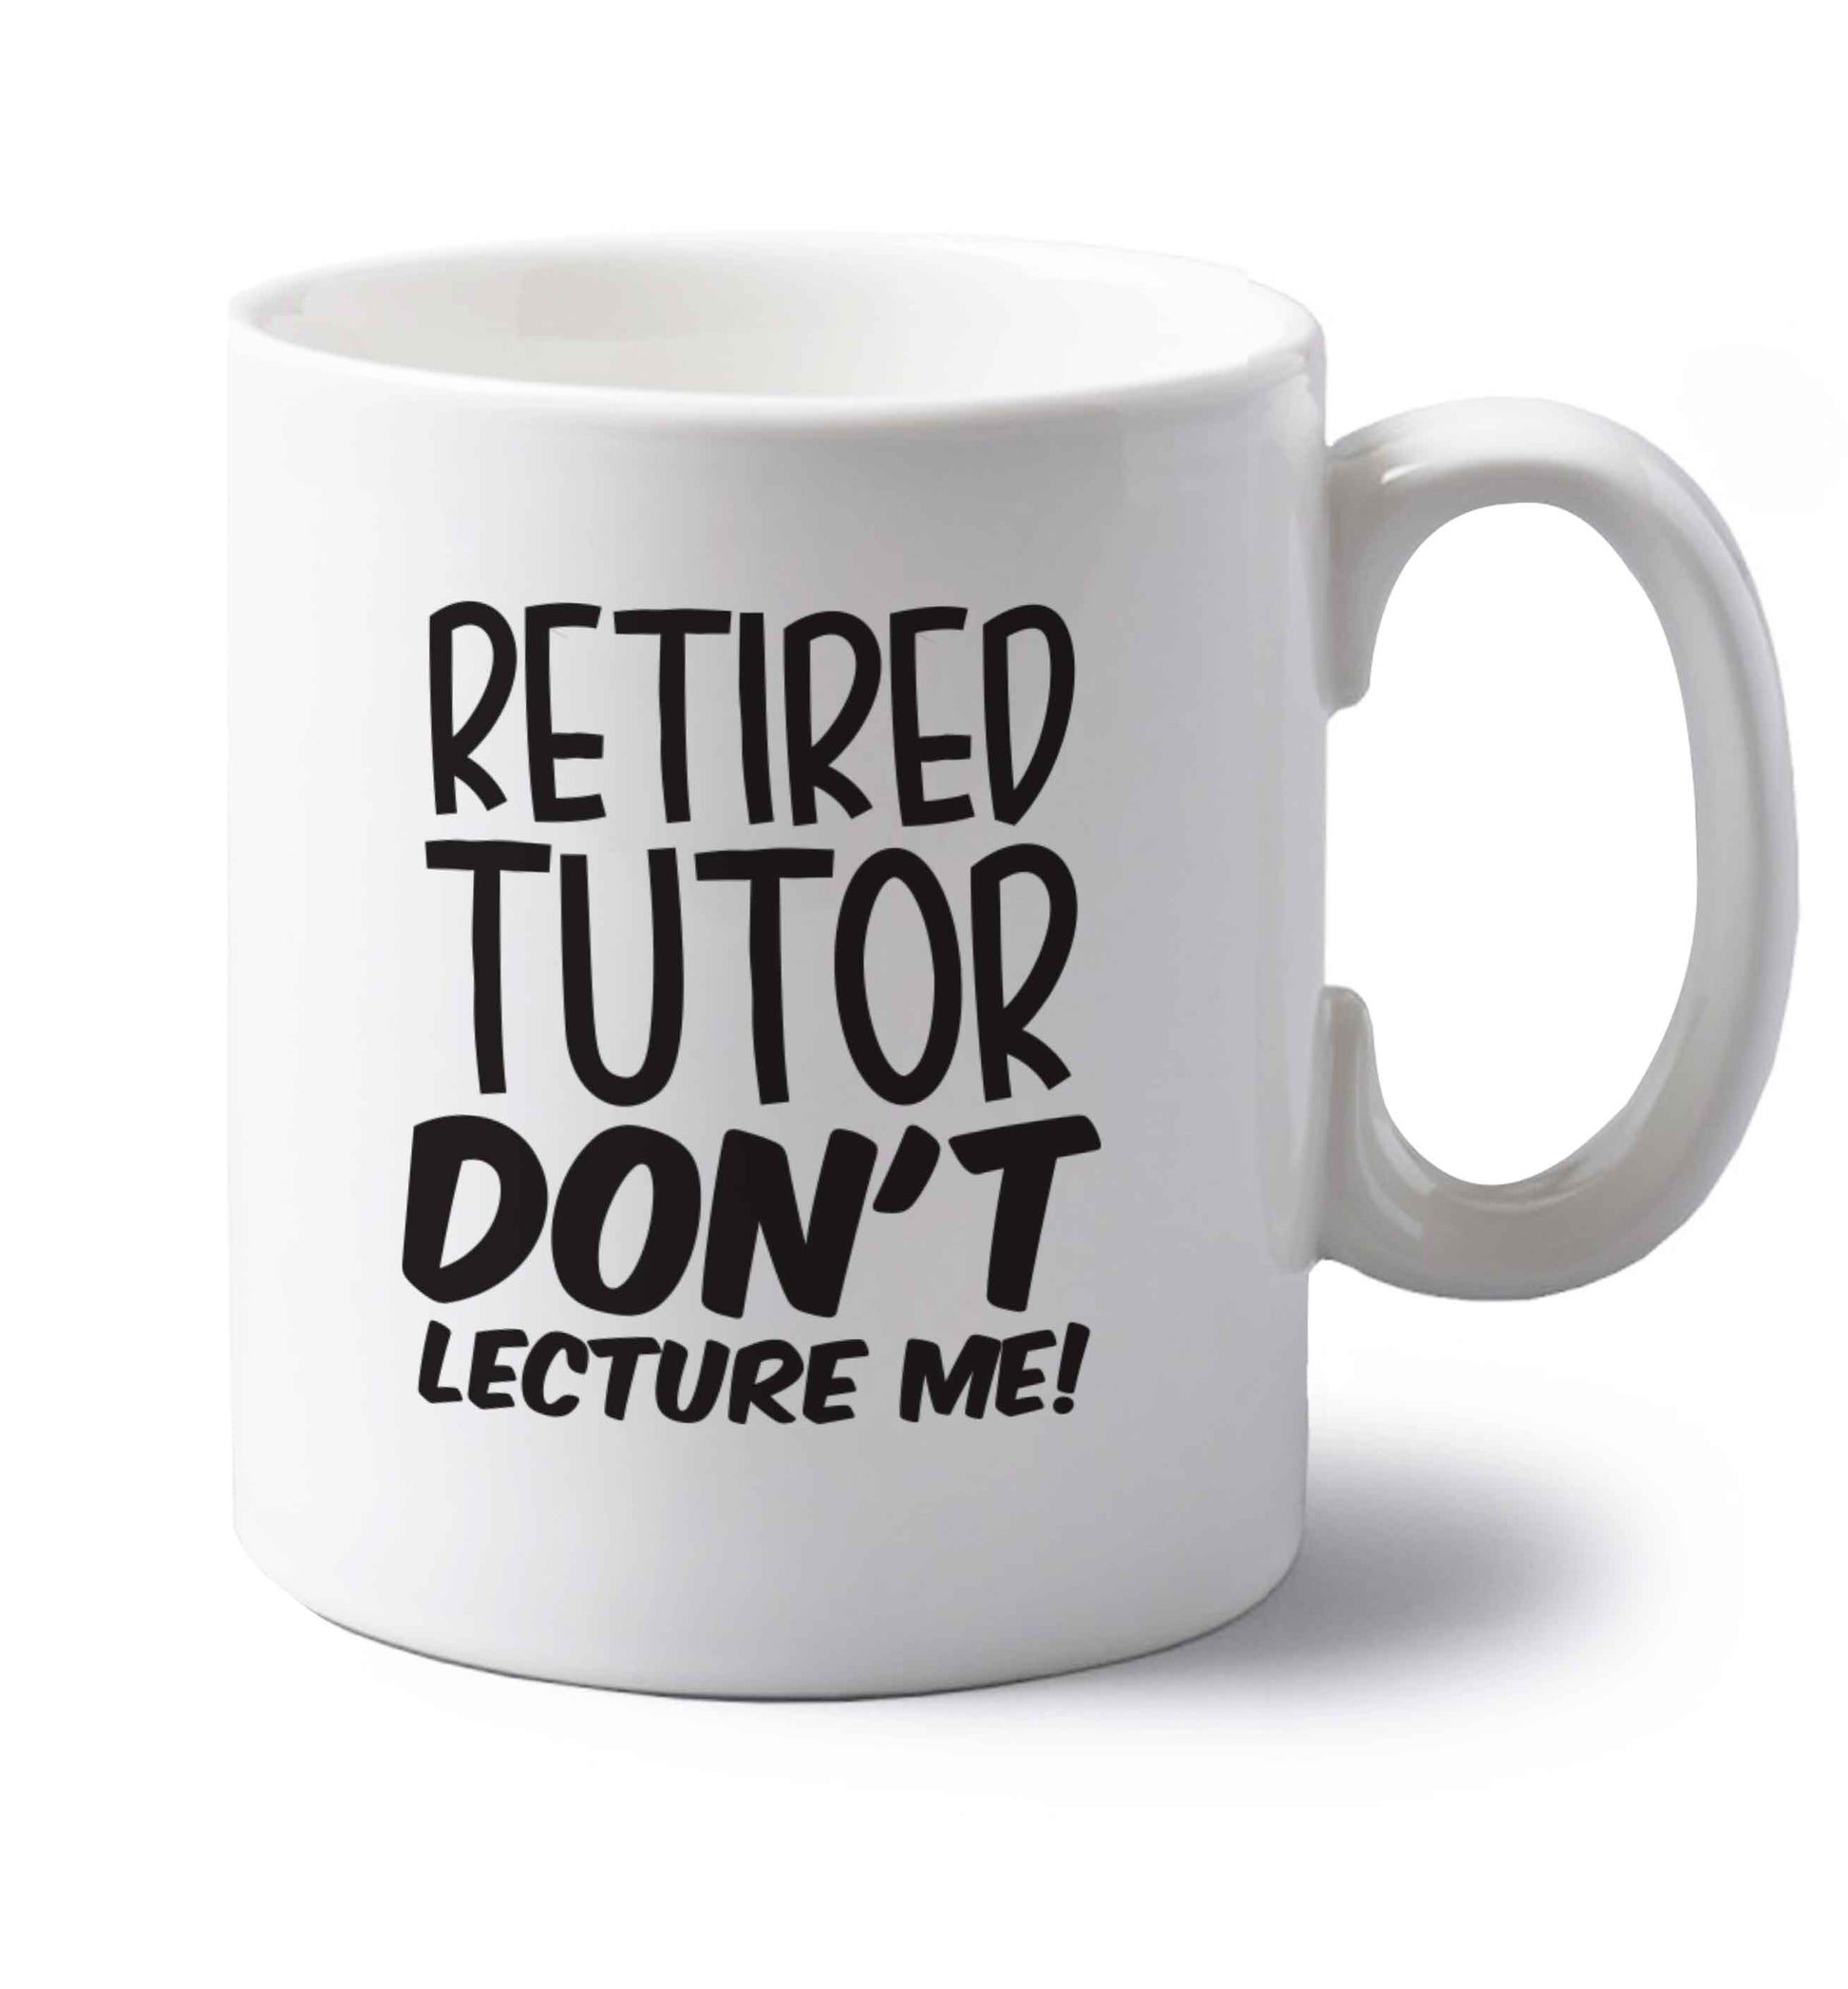 Retired tutor don't lecture me! left handed white ceramic mug 